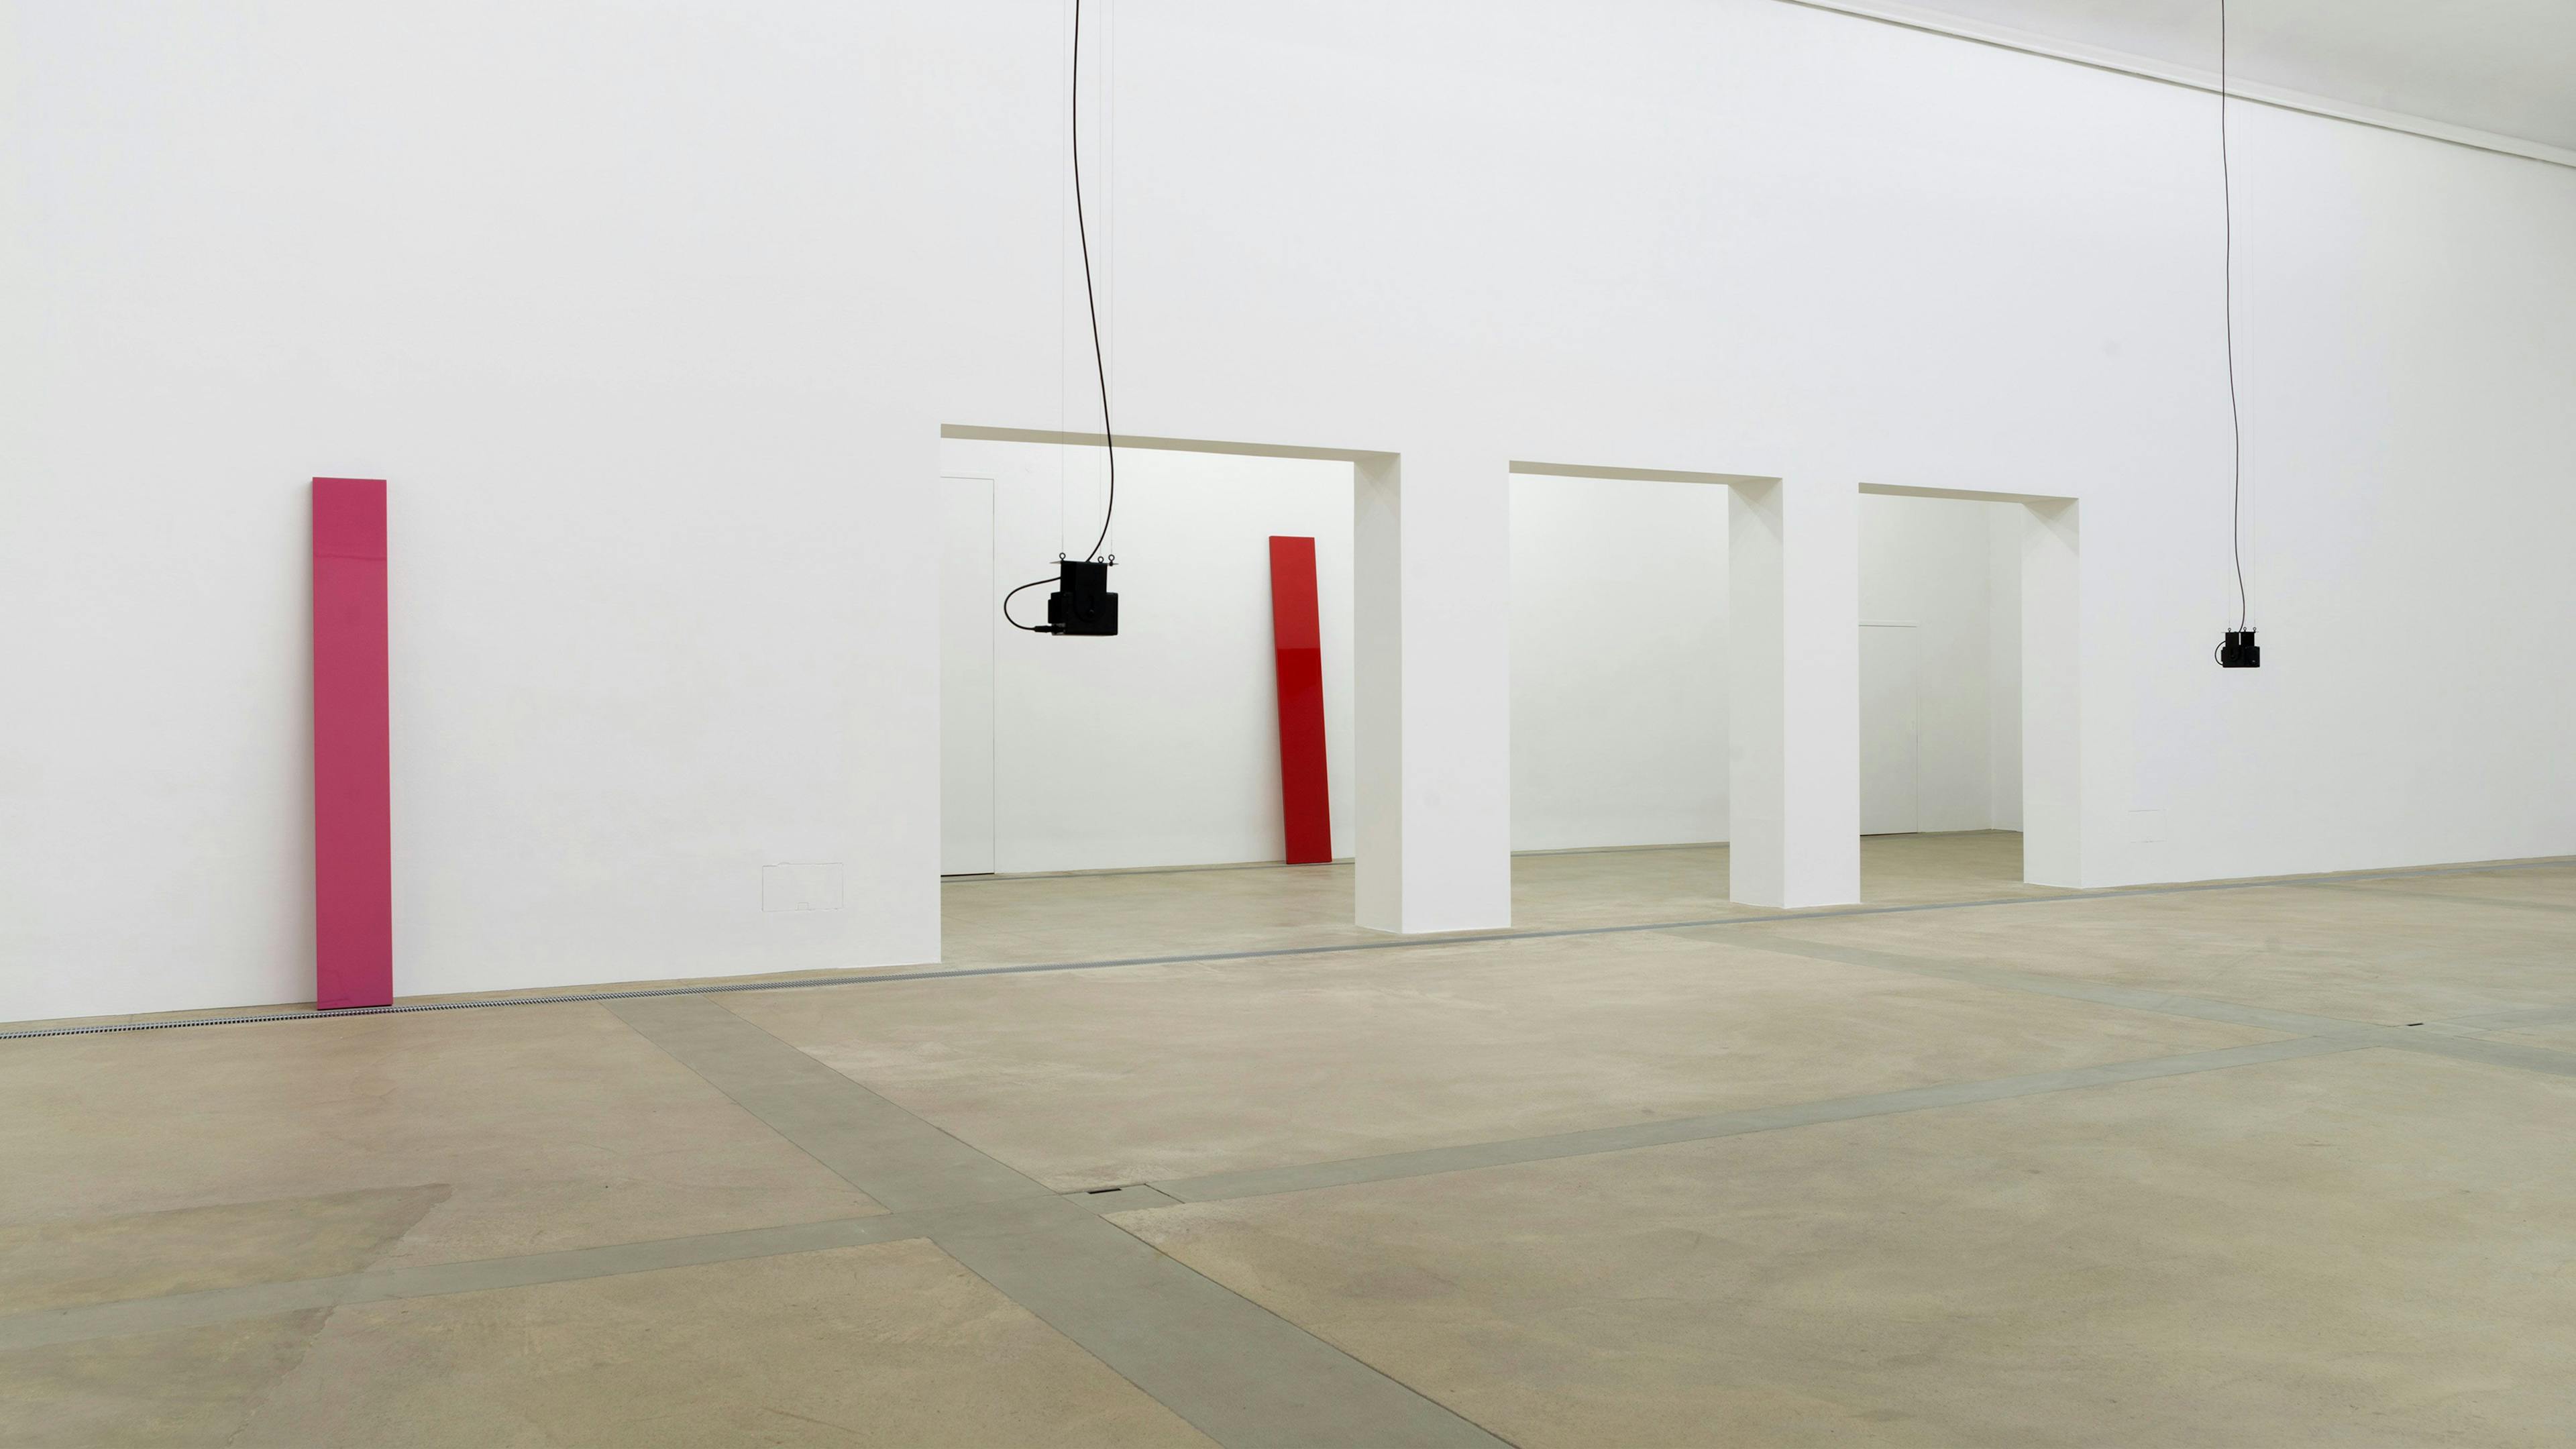 Installation view of Florian Hecker / John McCracken, at Künstlerhaus, Halle für Kunst & Medien in 2015